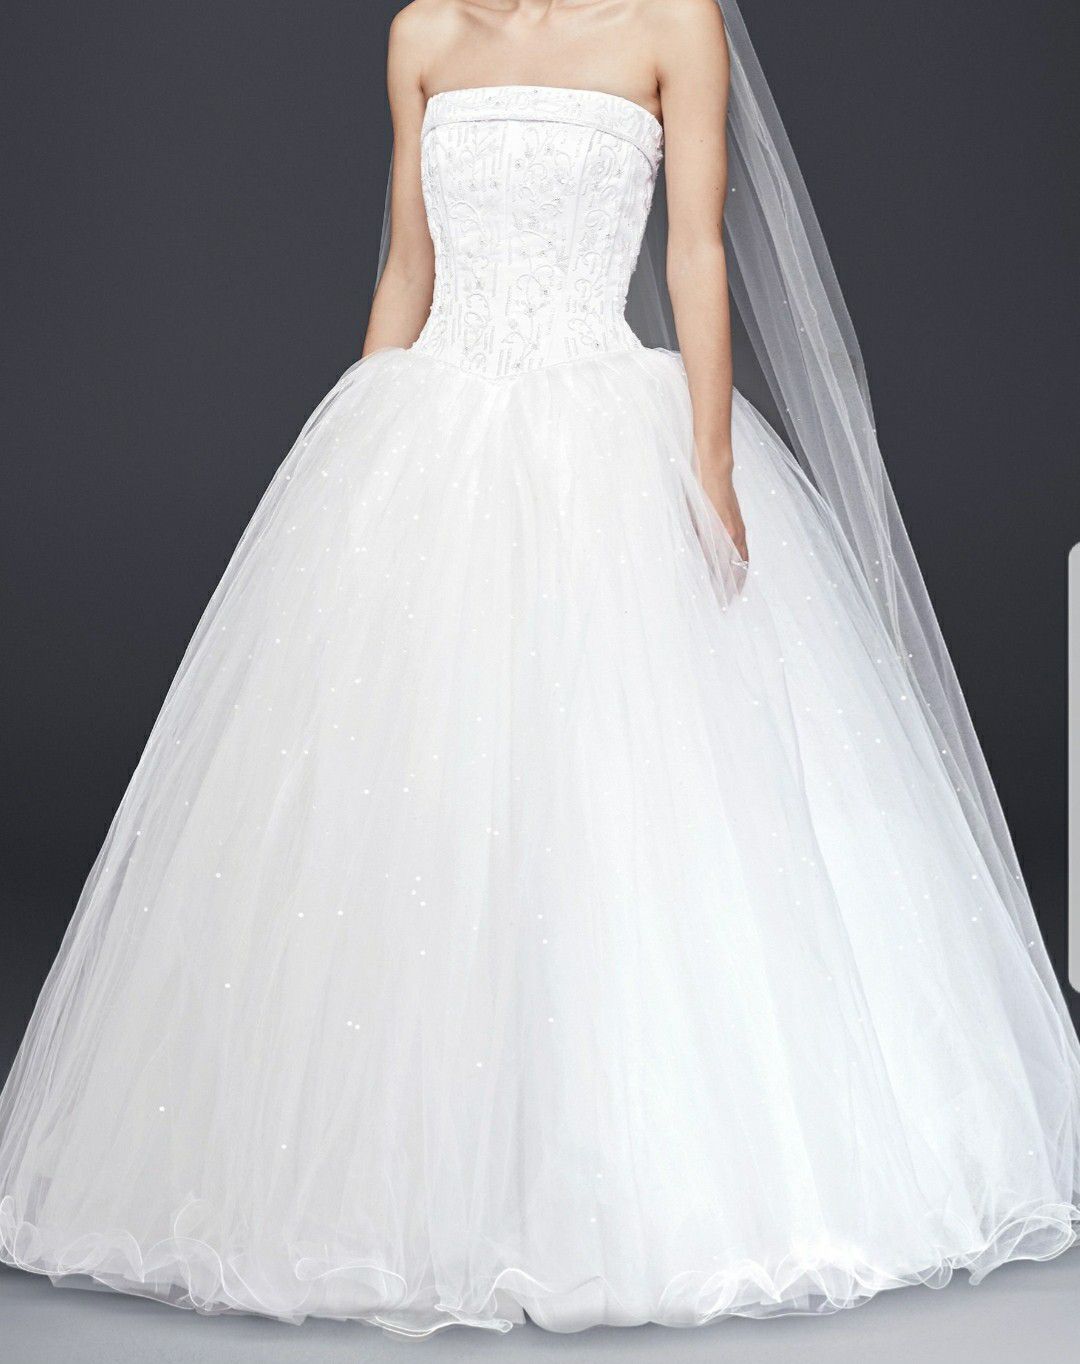 Quinceanera/Wedding dress